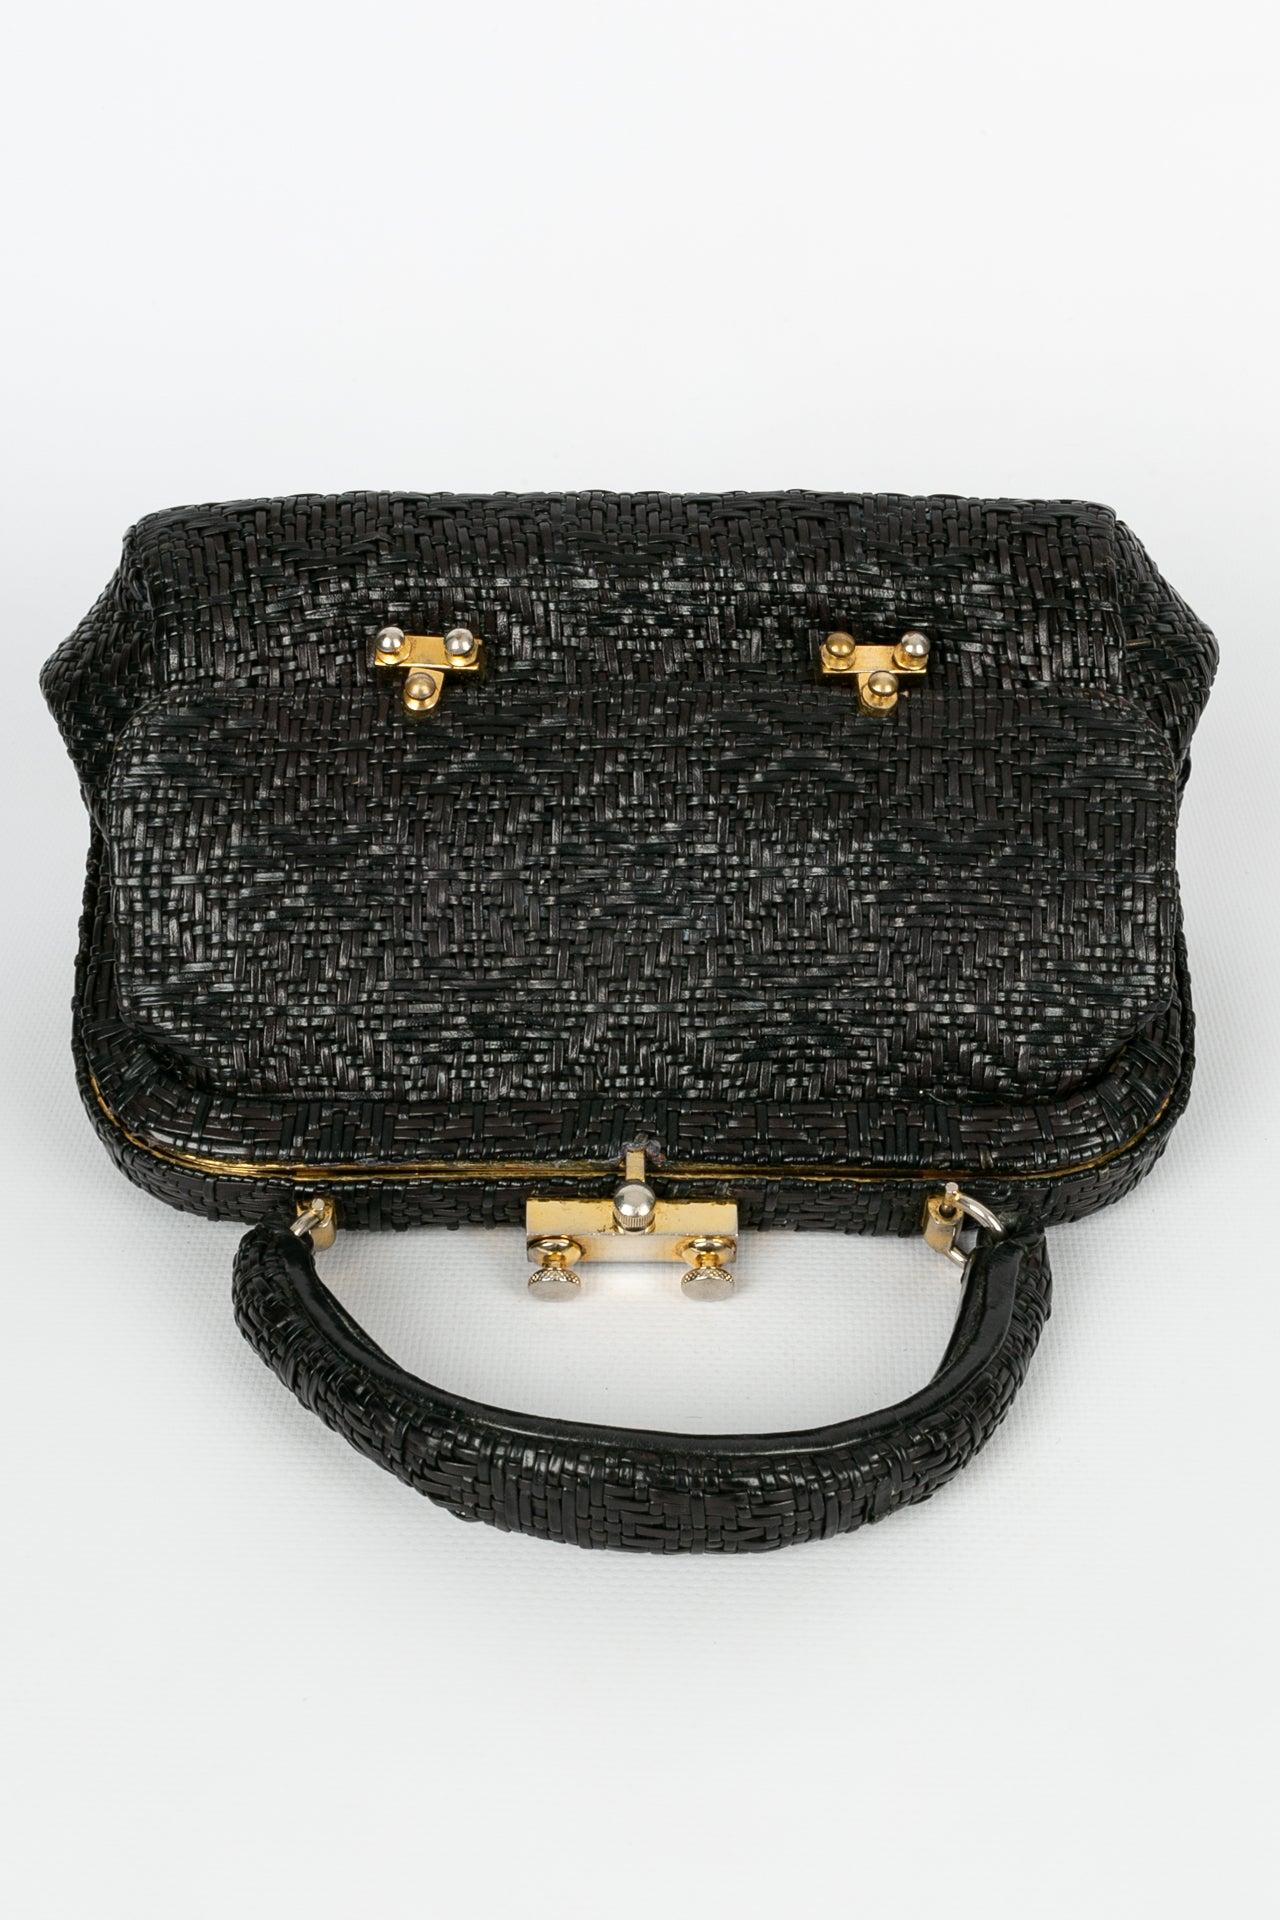 Roberta Di Camerino Black Leather Bag For Sale 1